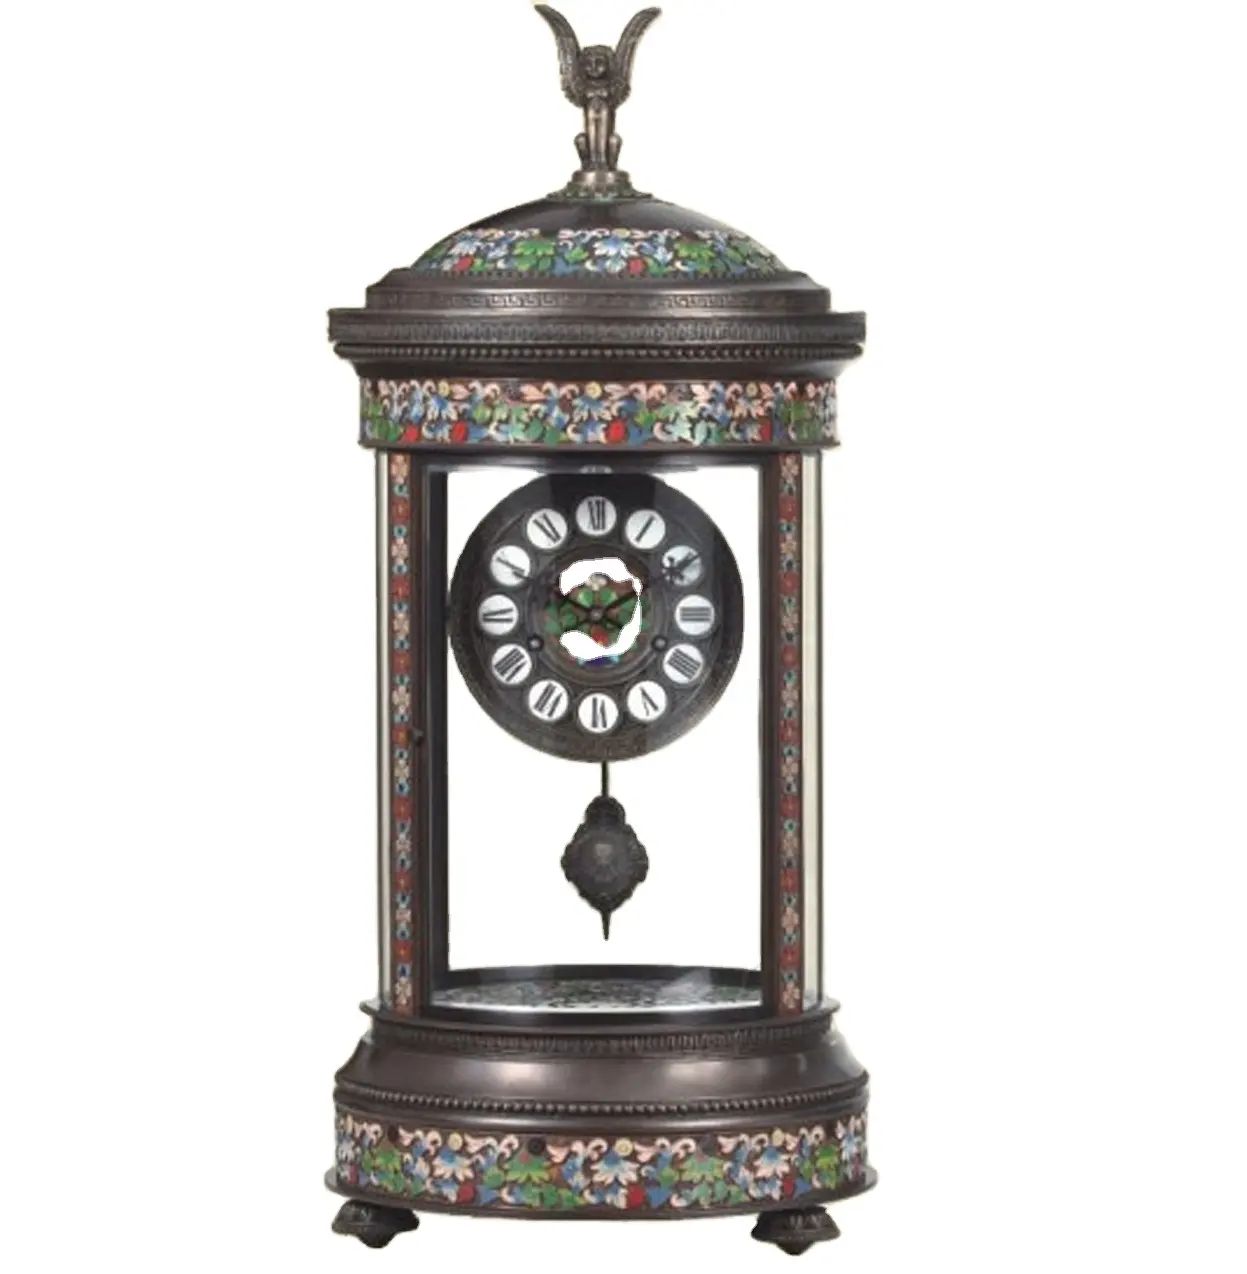 पीतल मंडप प्राचीन 19वीं फ़्रेंच शैली 15 दिन यांत्रिक मूवमेंट फ्लोरल क्लोइज़न इनेमल टेबल/डेस्क घड़ी/घड़ी